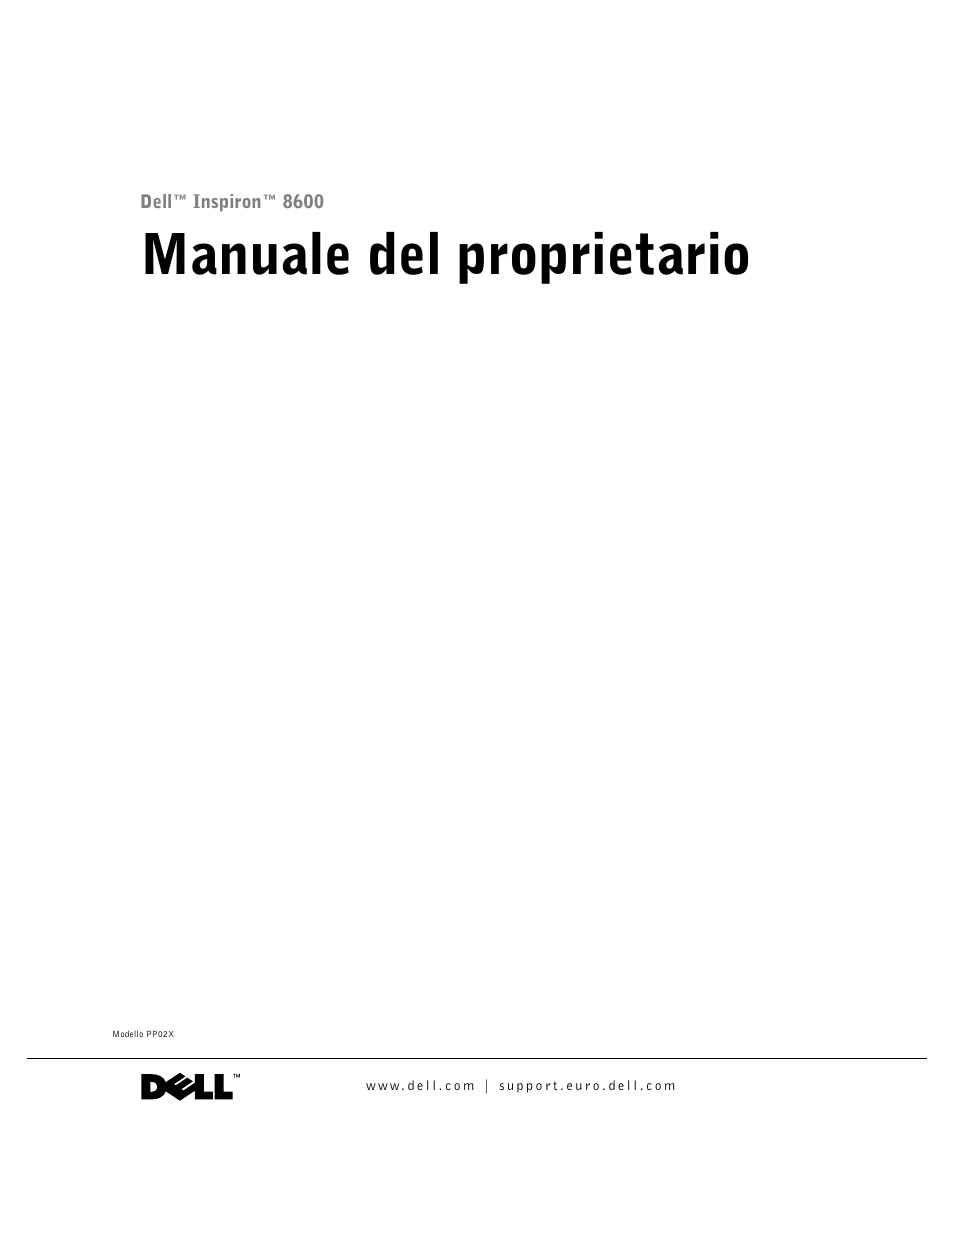 Dell Inspiron 8600 Manuale d'uso | Pagine: 166